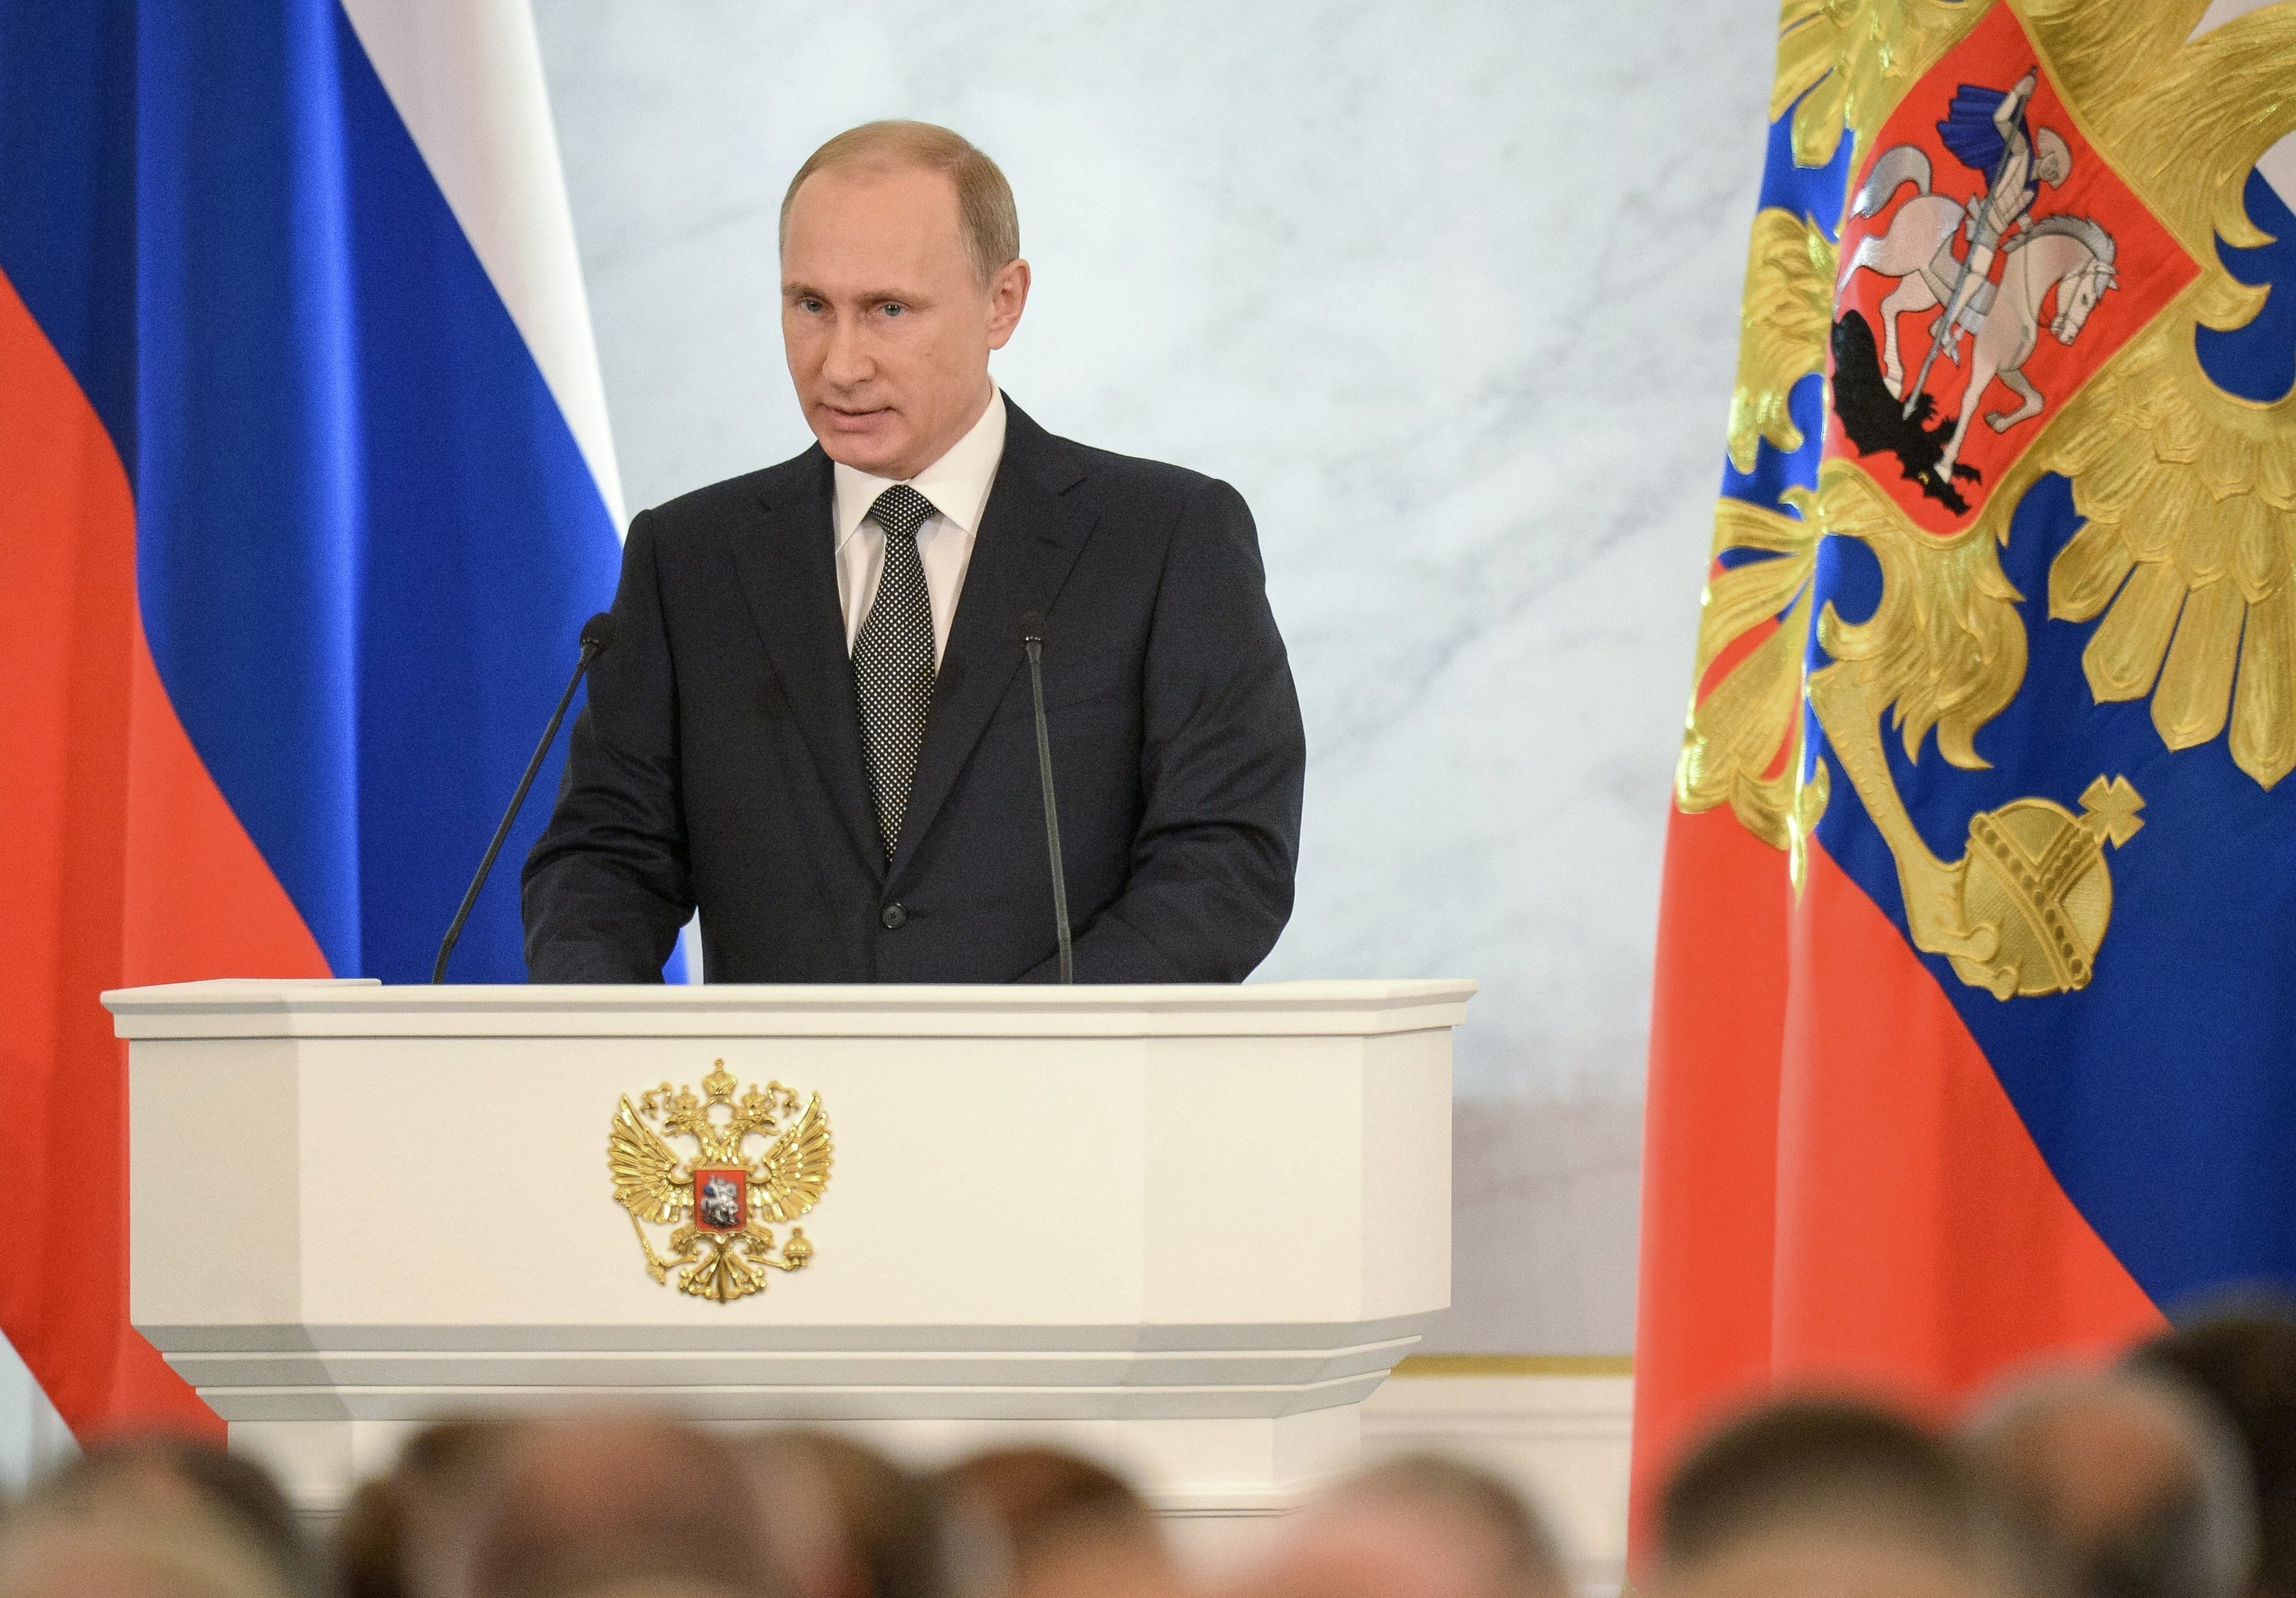 Prezident-Rossii-Vladimir-Putin-vystupil-s-ezhegodnym-poslaniem-Federalnomu-sobraniyu.jpg